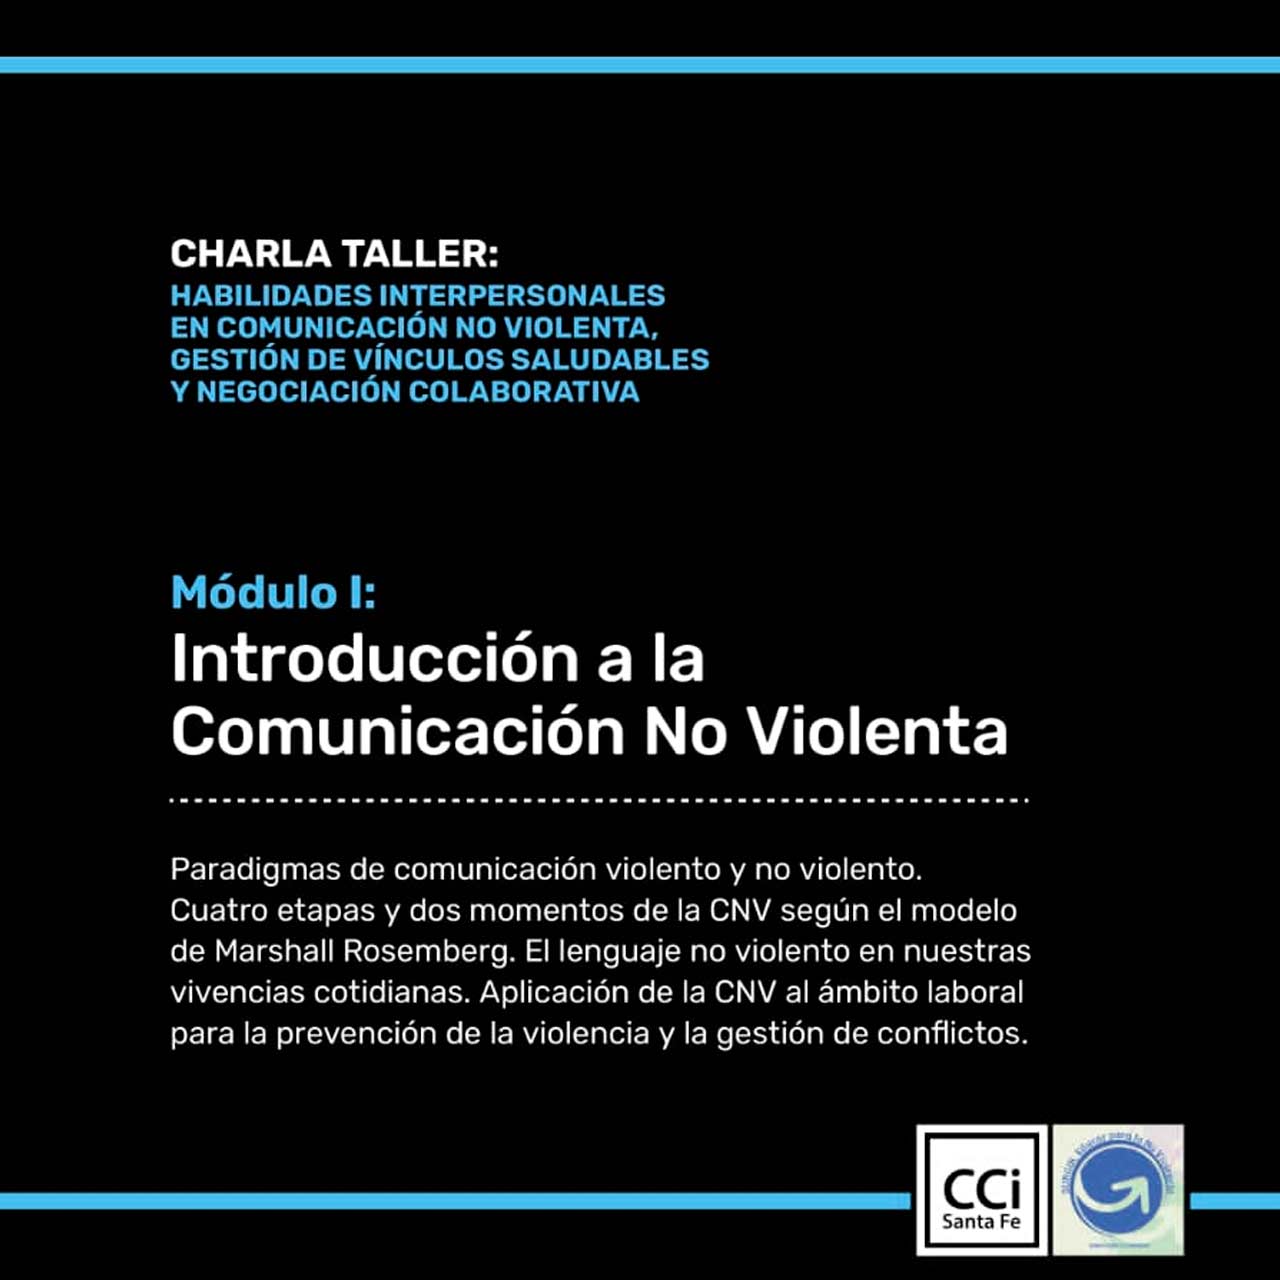 Habilidades interpersonales en comunicación no violenta, gestión de vínculos saludables y negociación colaborativa